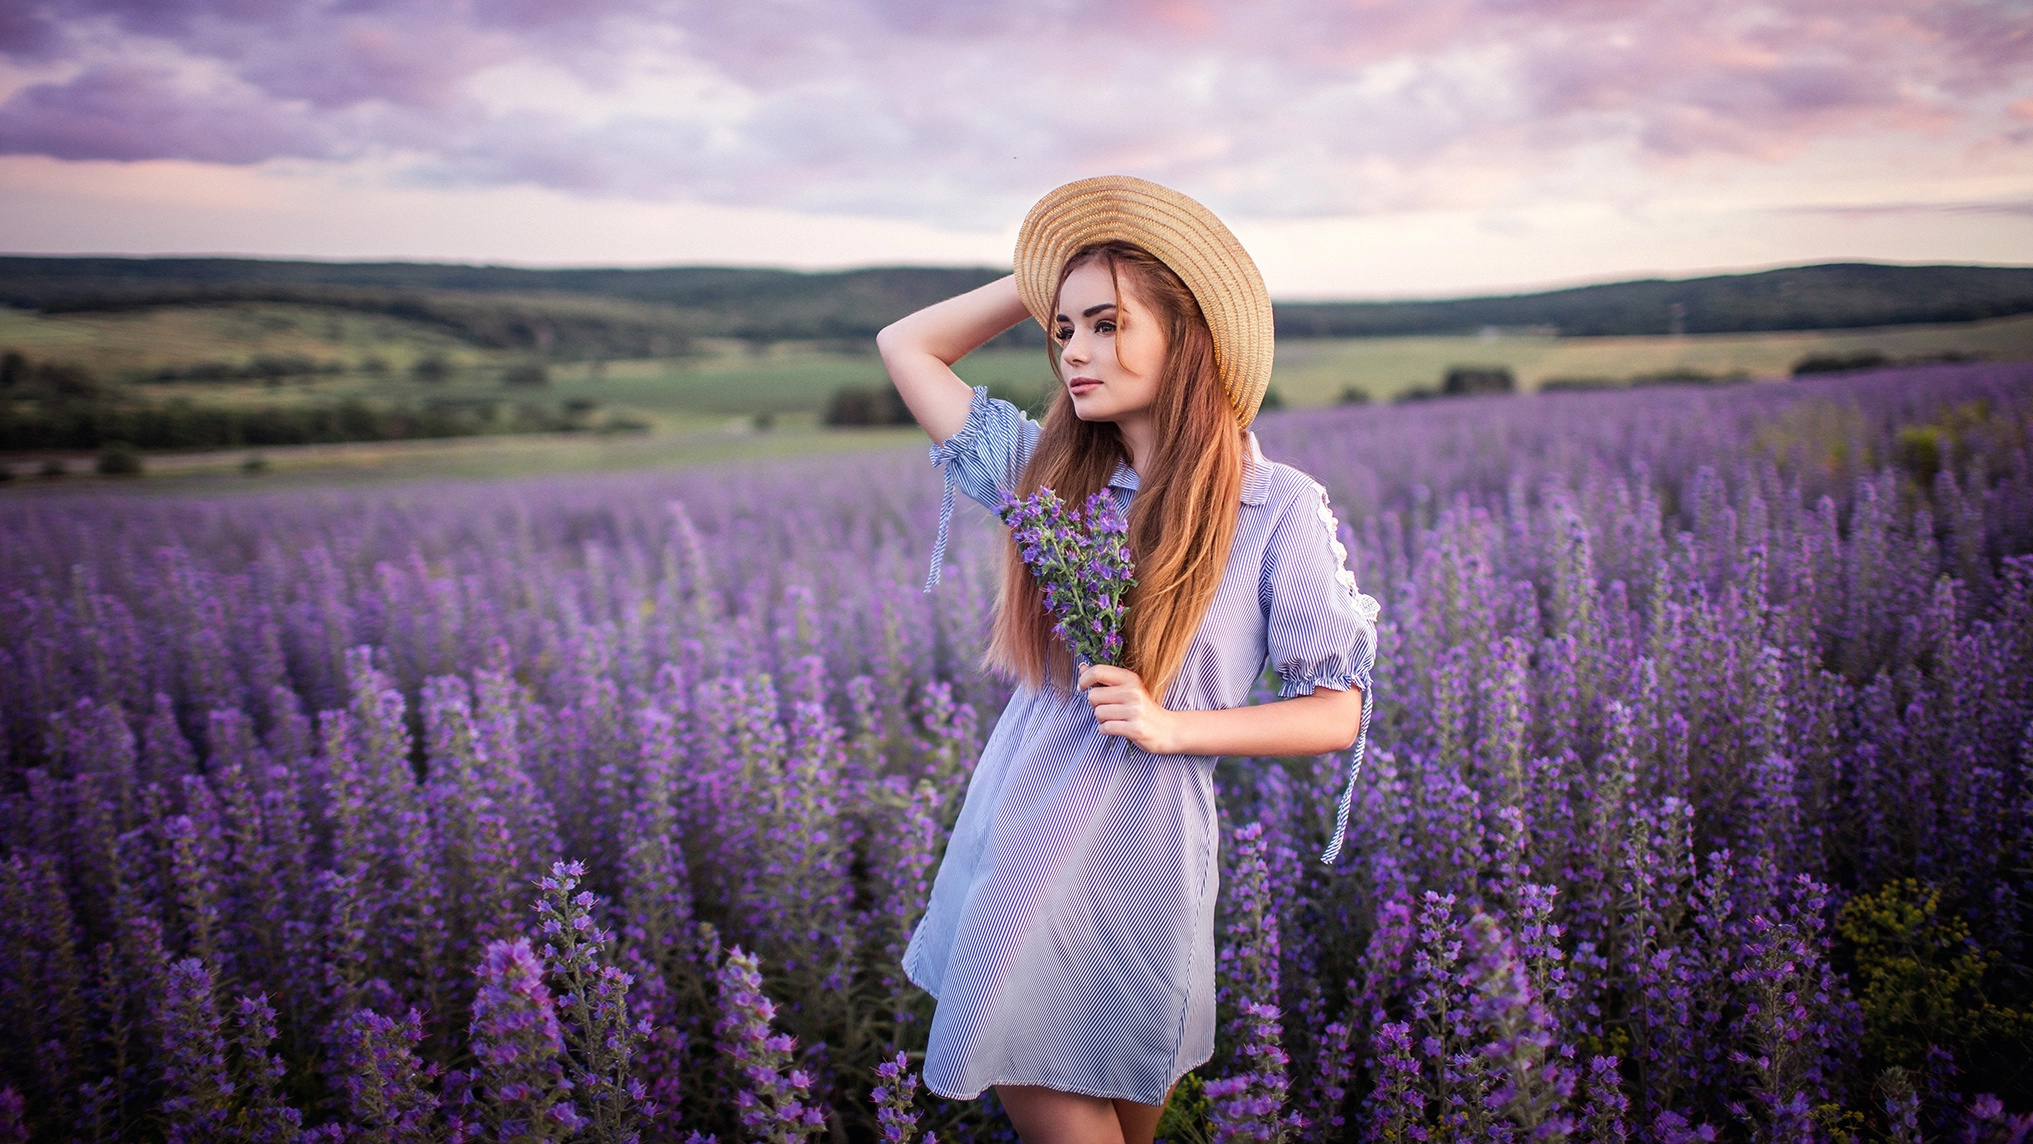 People 2033x1144 flowers purple flowers plants landscape hat women outdoors long hair women model Sergey Shatskov